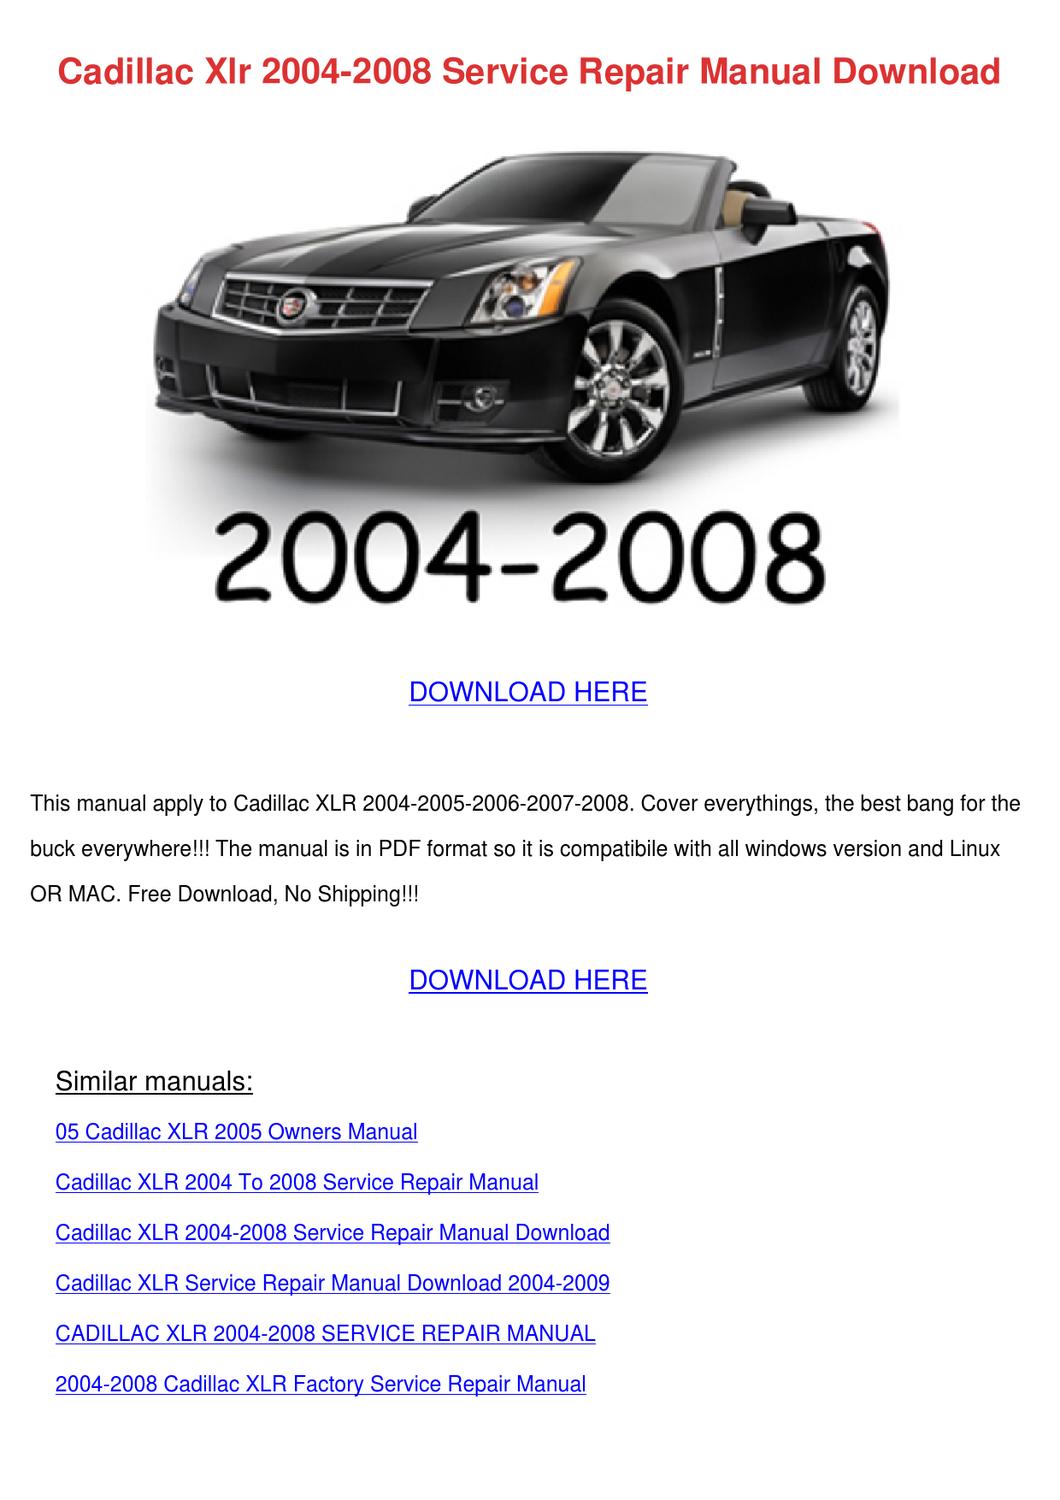 Cadillac Repair Manual Download